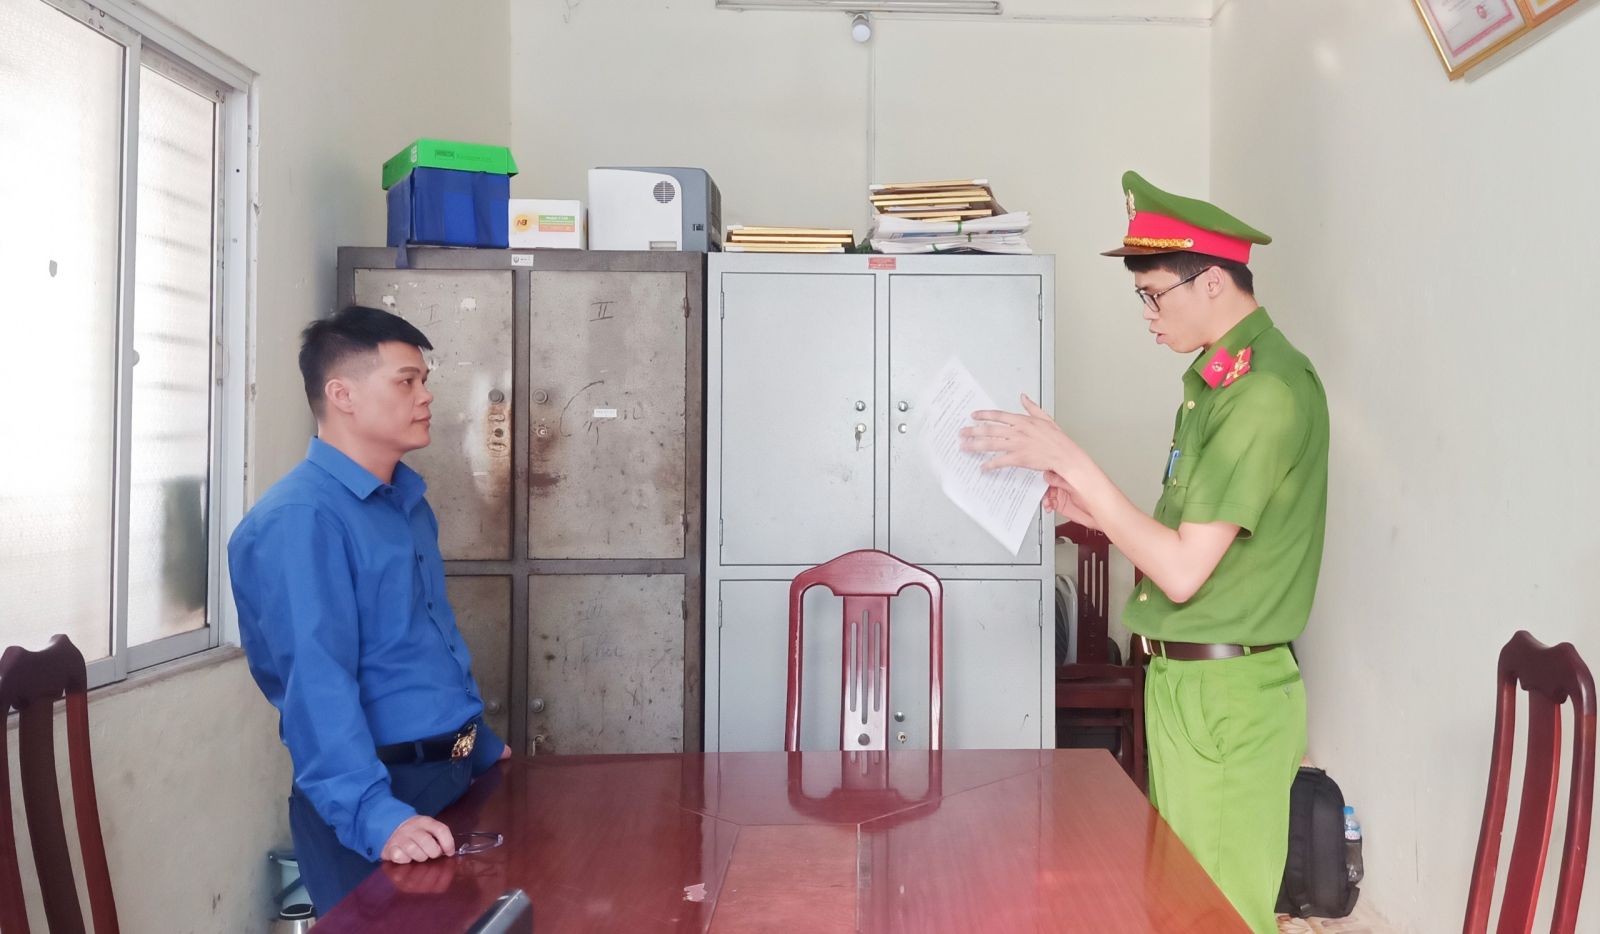 Nguyên trưởng phòng kinh doanh Công ty bảo hiểm Dai-ichi Việt Nam bị bắt - Ảnh 1.